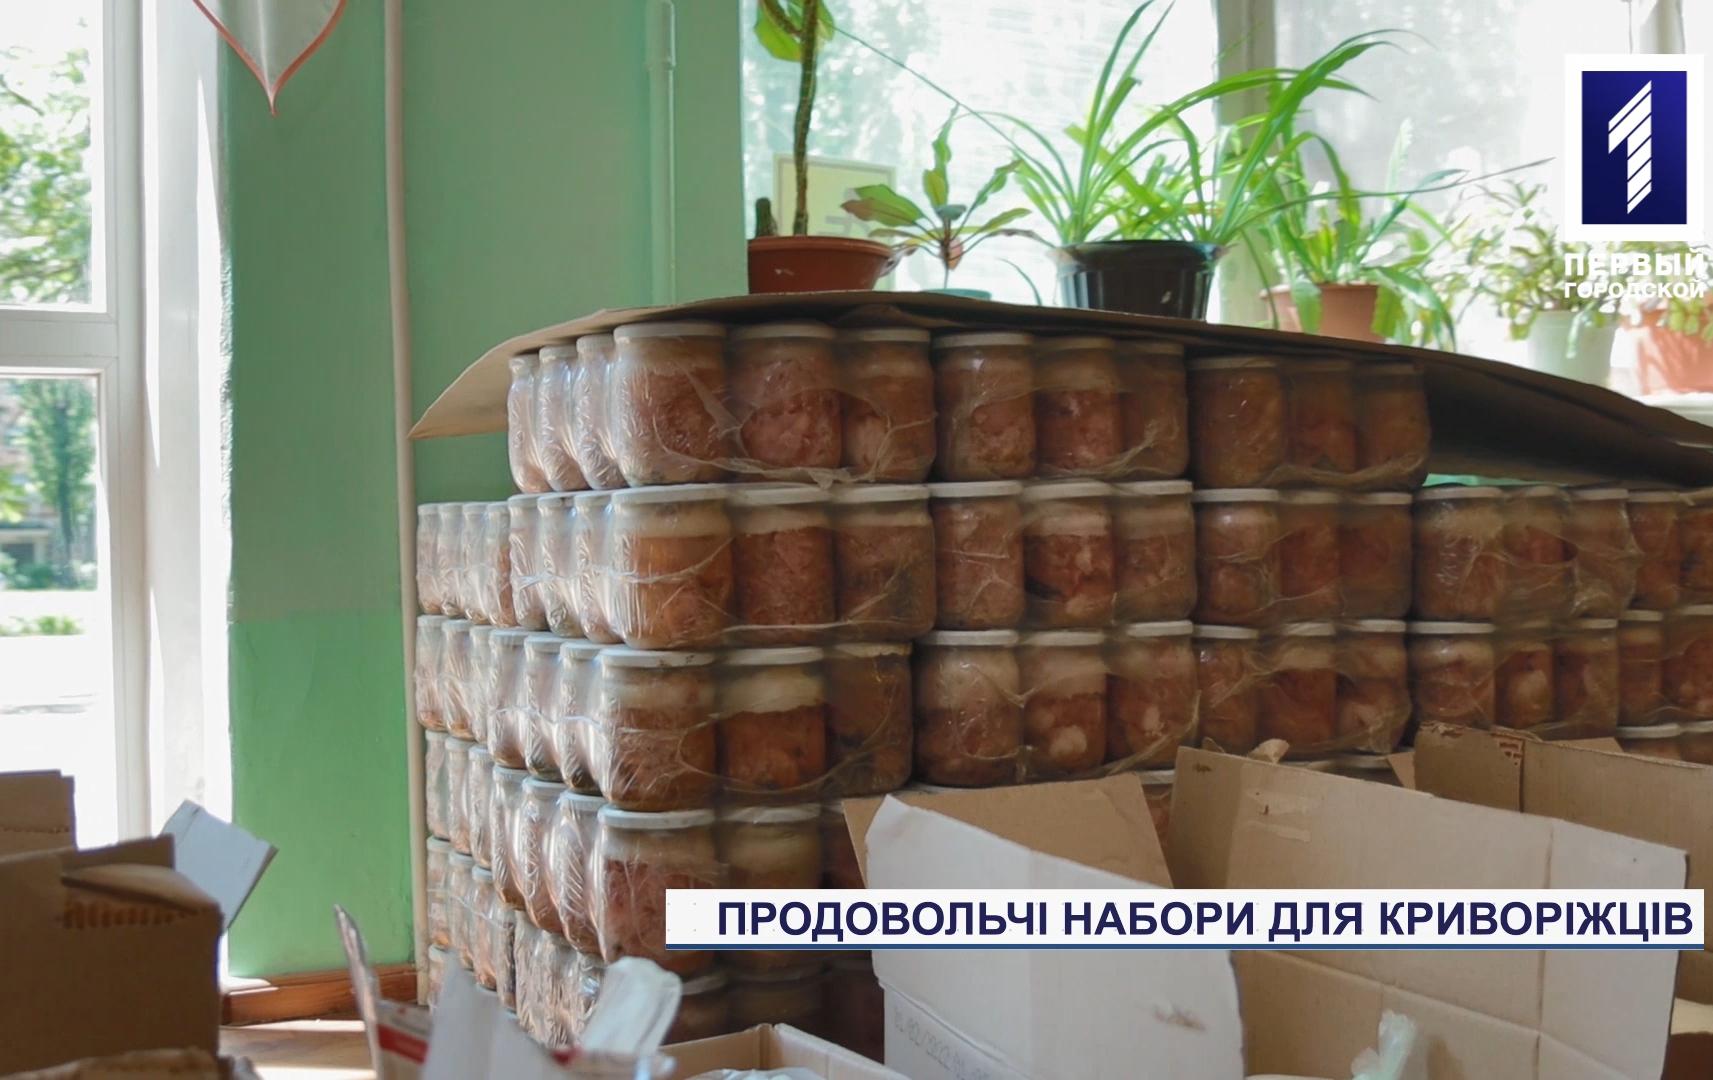 В Долгинцевском районе Кривого Рога продолжается выдача продуктовых наборов для льготников